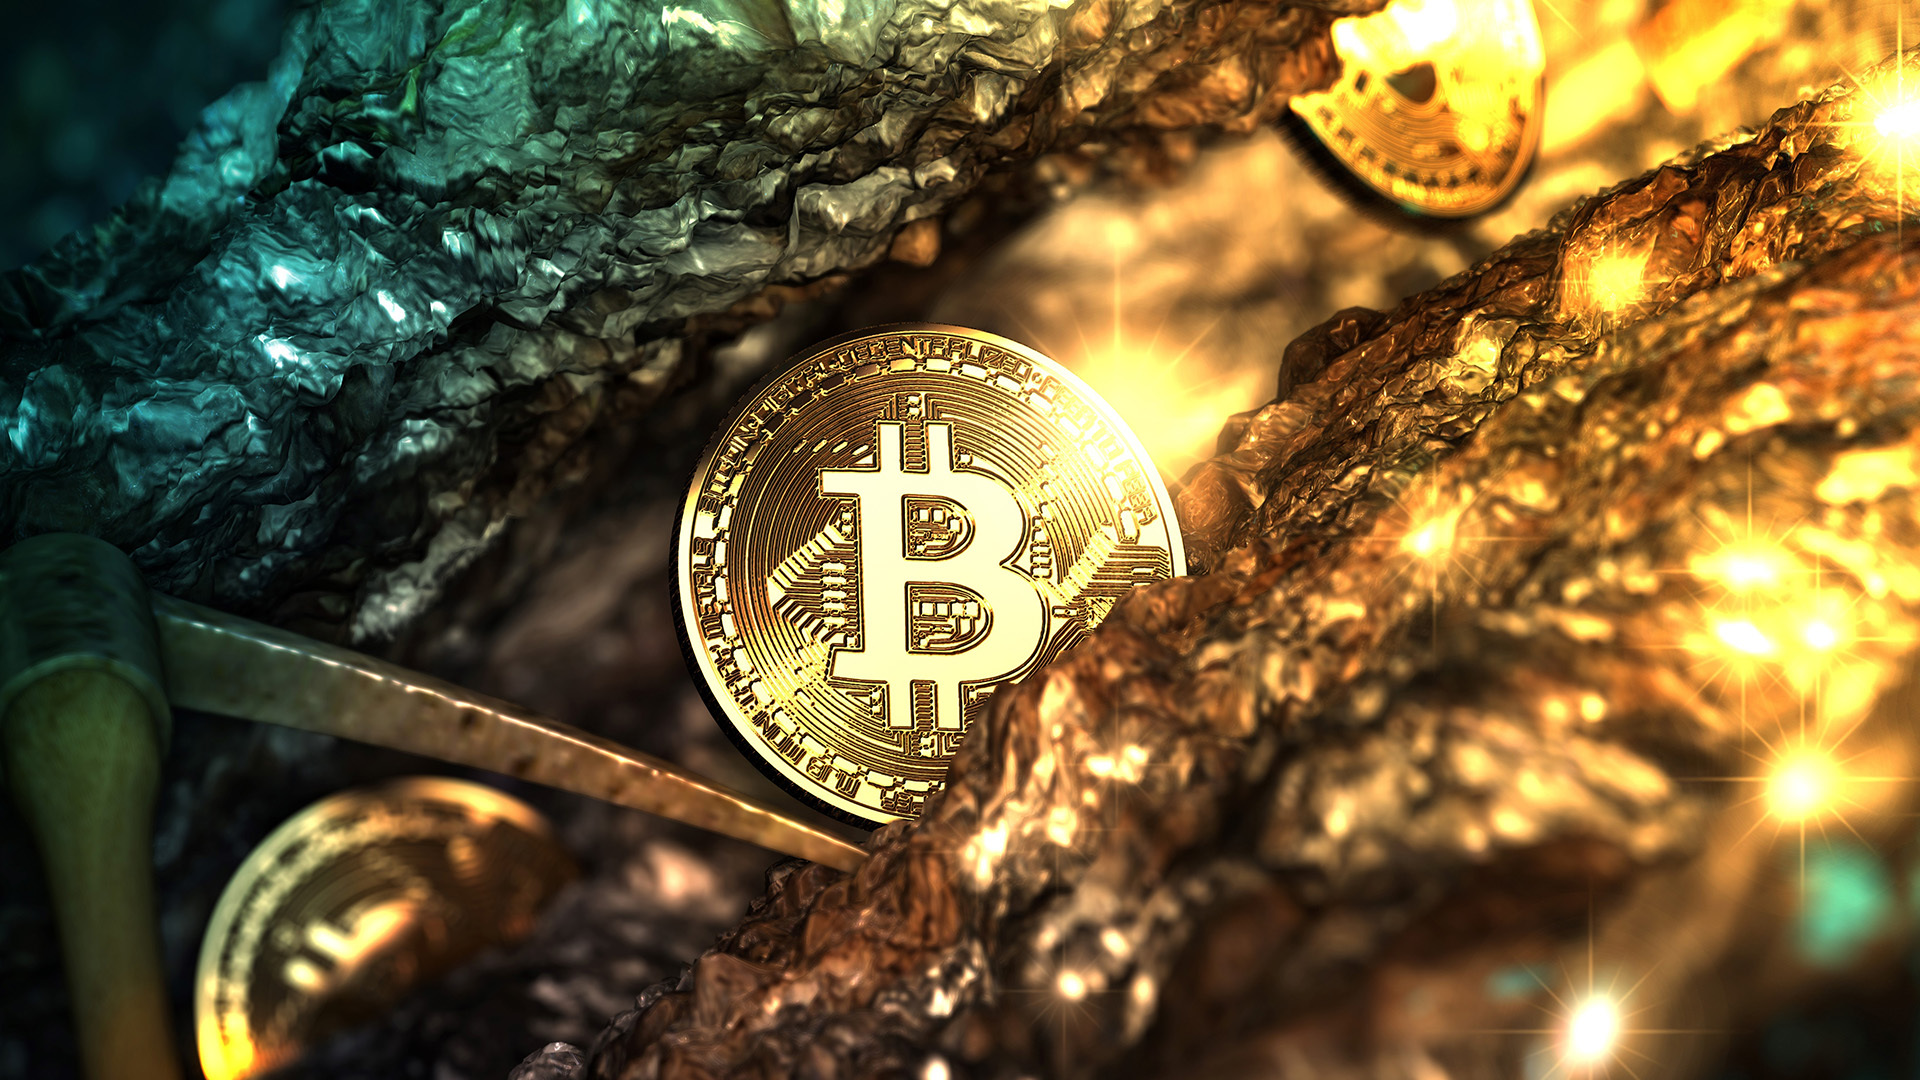 be kell fektetnem bitcoin aranyat?